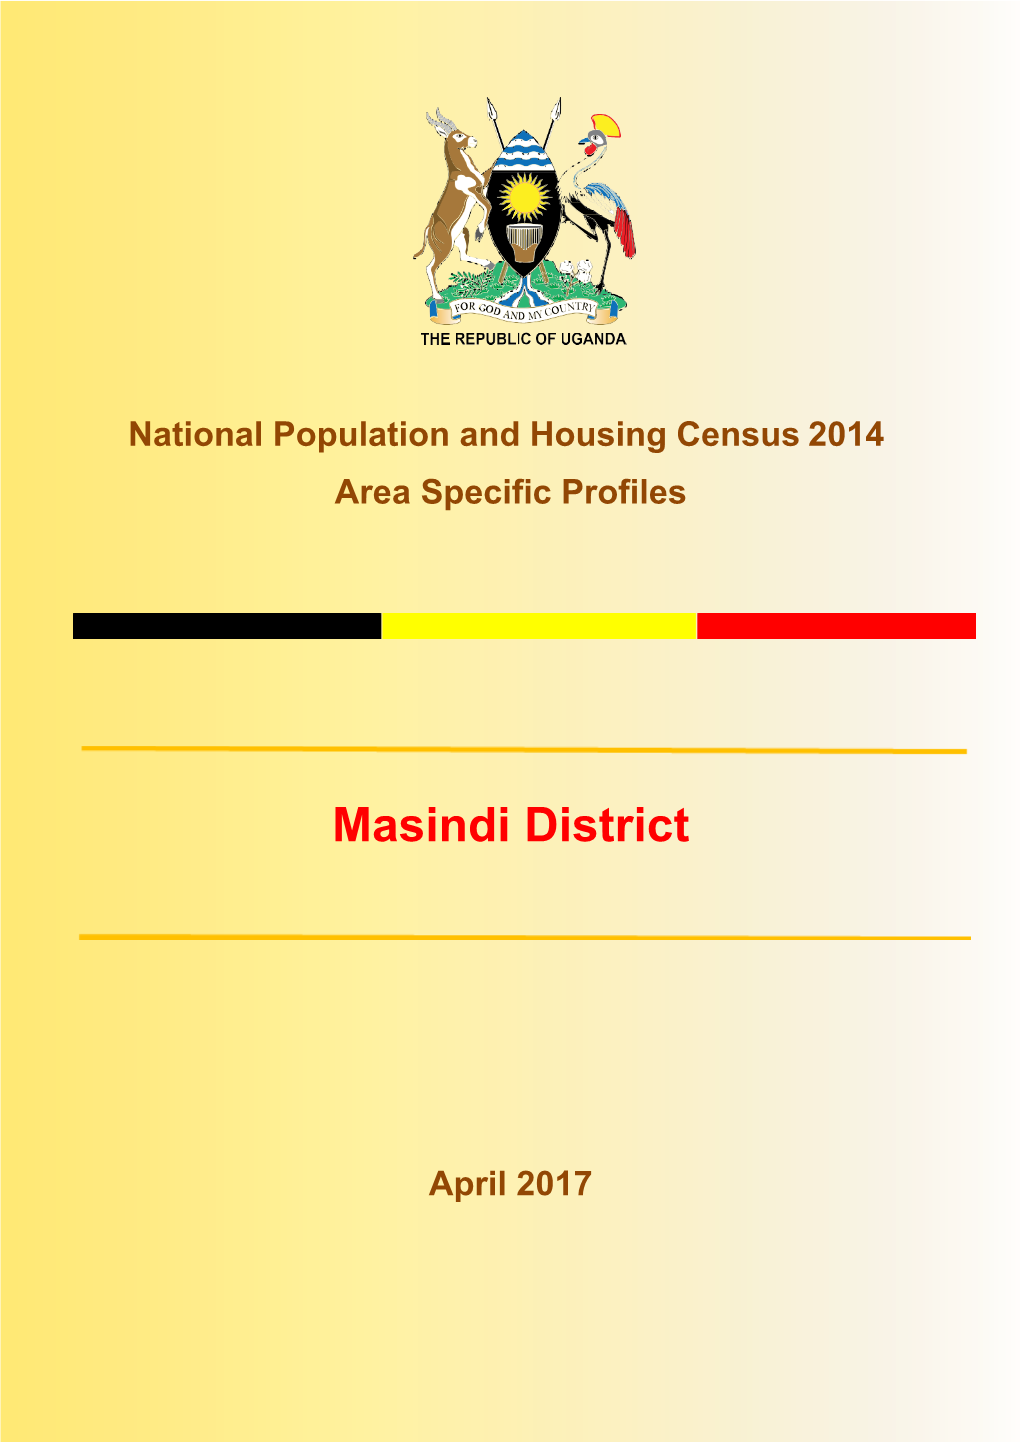 Masindi District